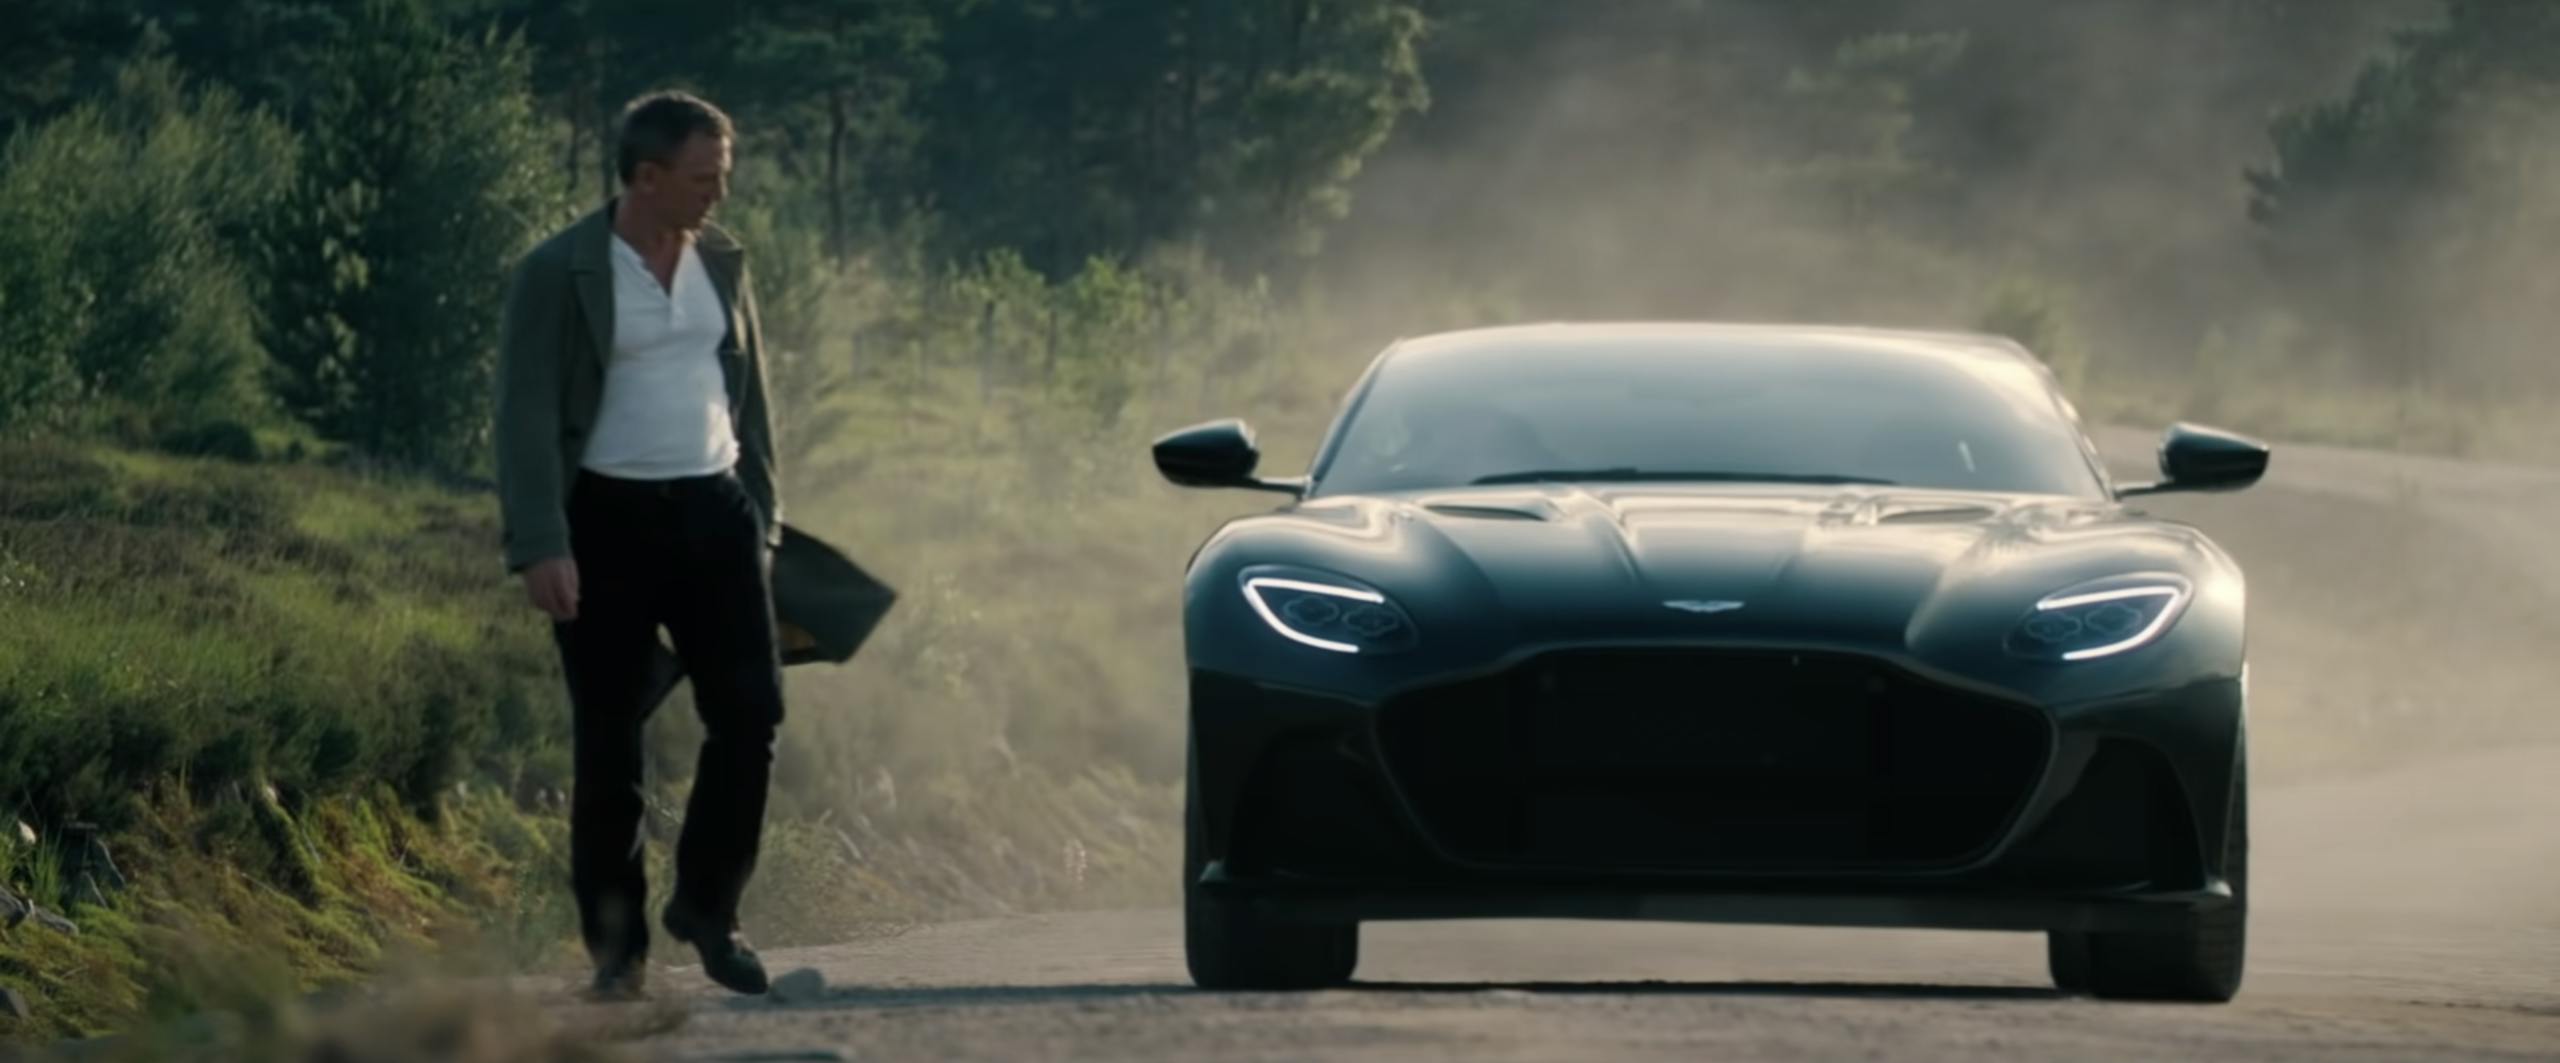 James Bond No Time to Die Aston Martin Superleggera